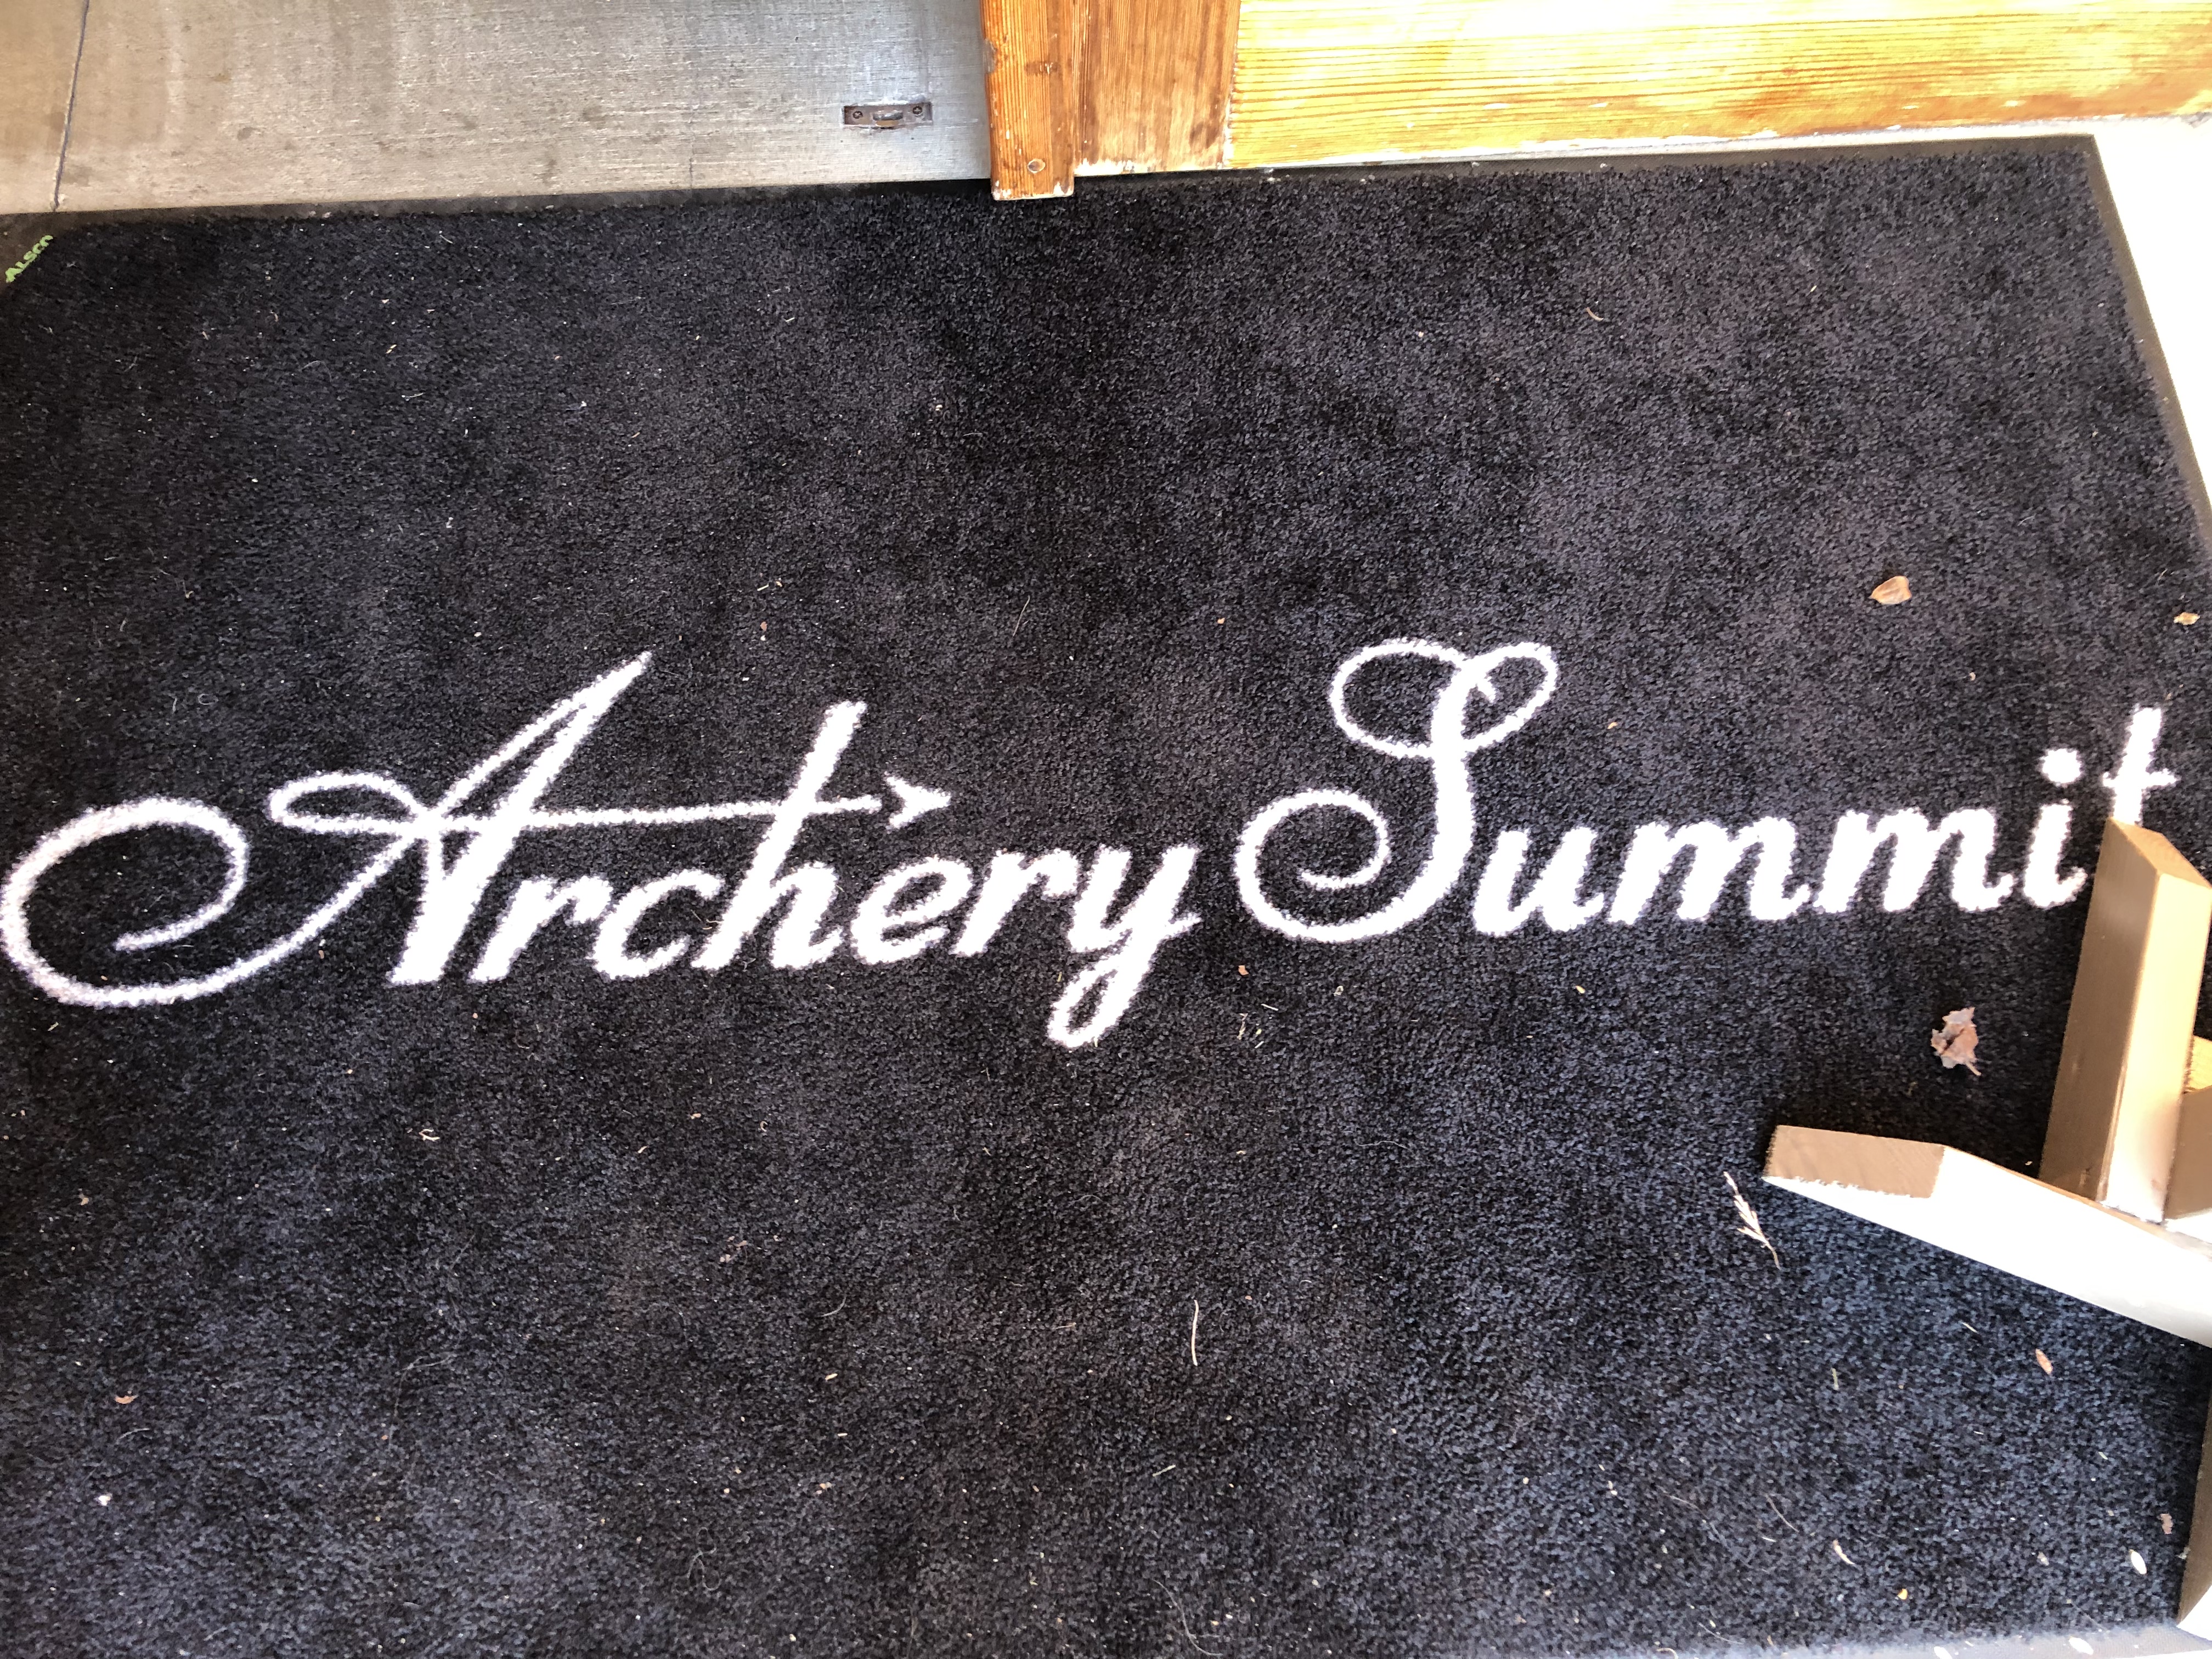 WineTour19 archery summit mat